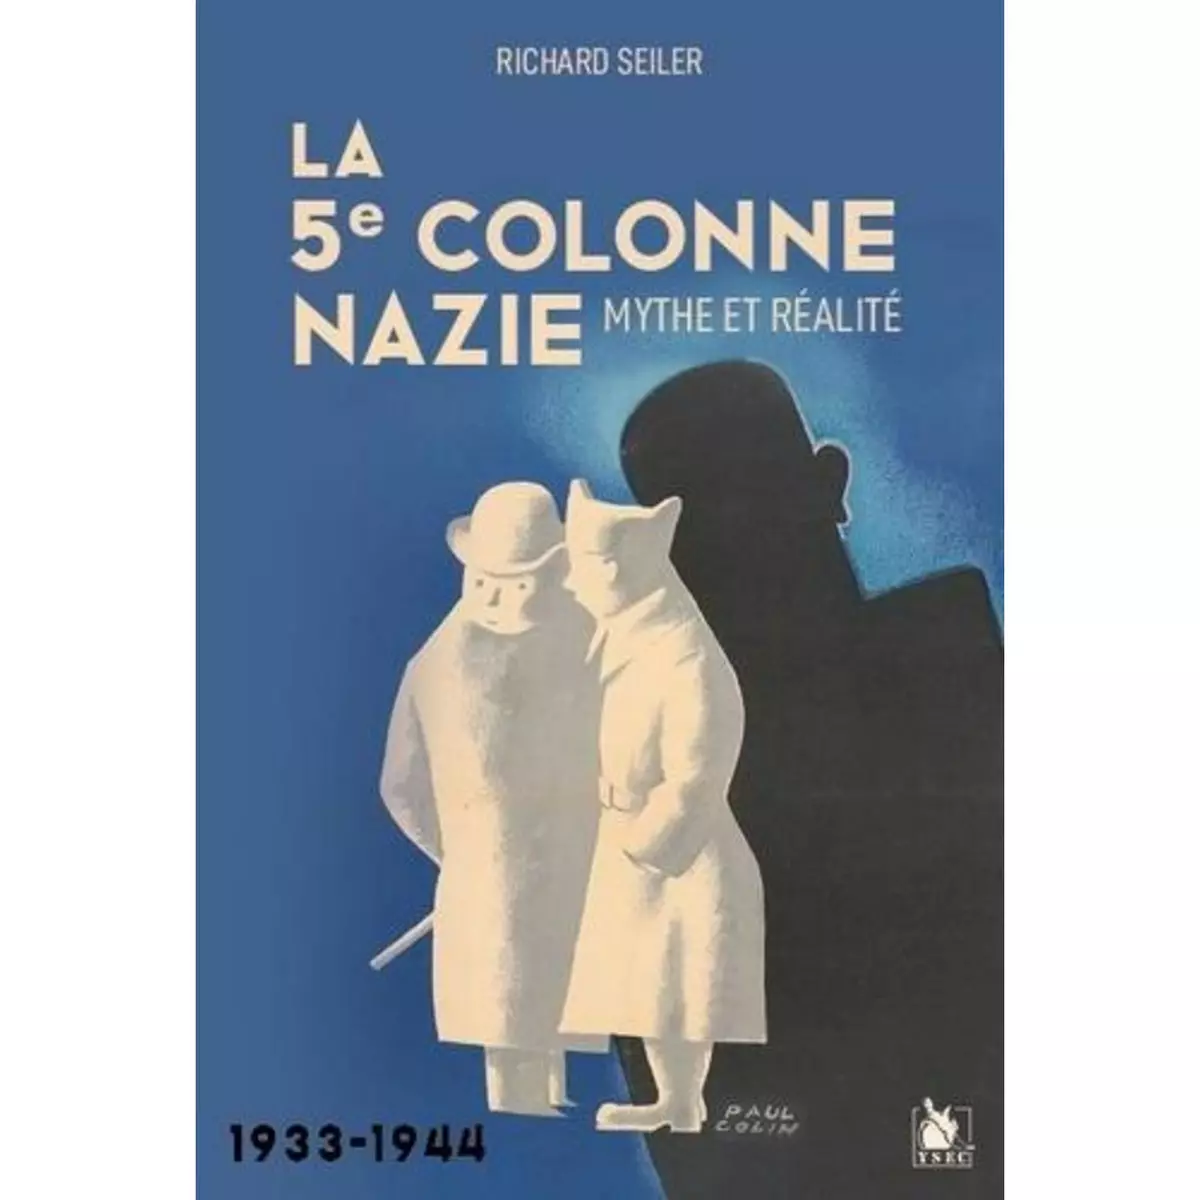  LA 5E COLONNE NAZIE. MYTHE ET REALITE 1933-1944, Seiler Richard